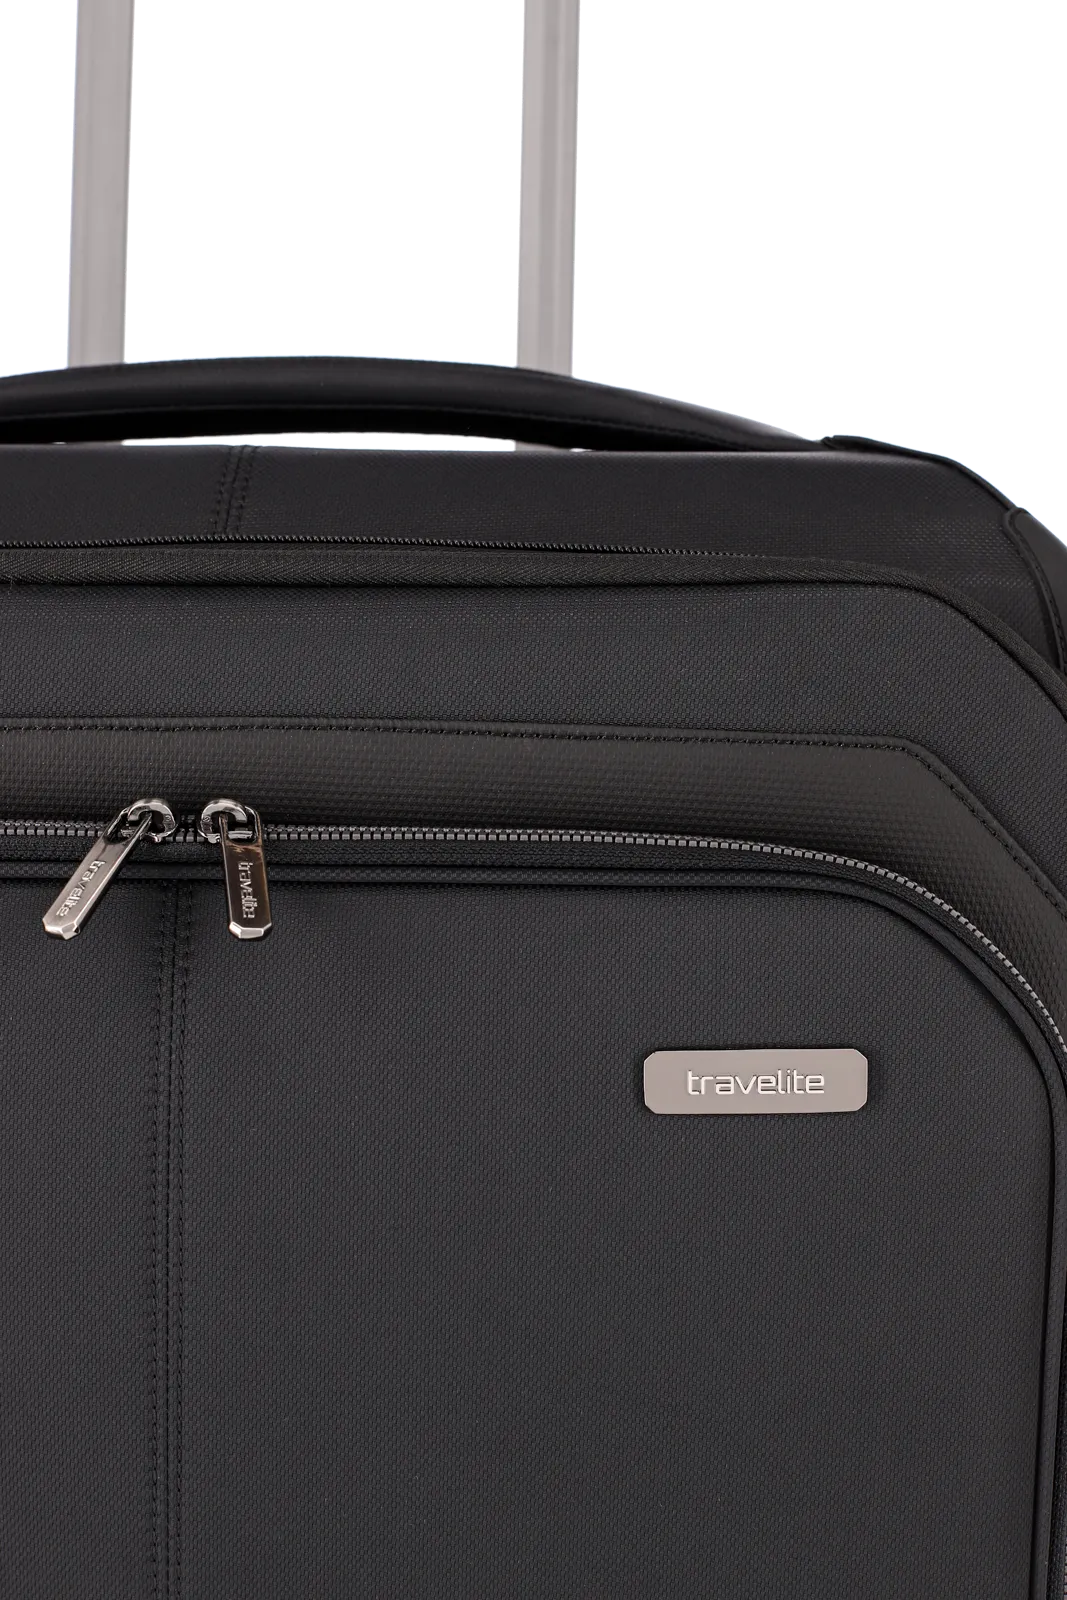 Weichgepäck Koffer Priima in schwarz von travelite Emblem Nahaufnahme